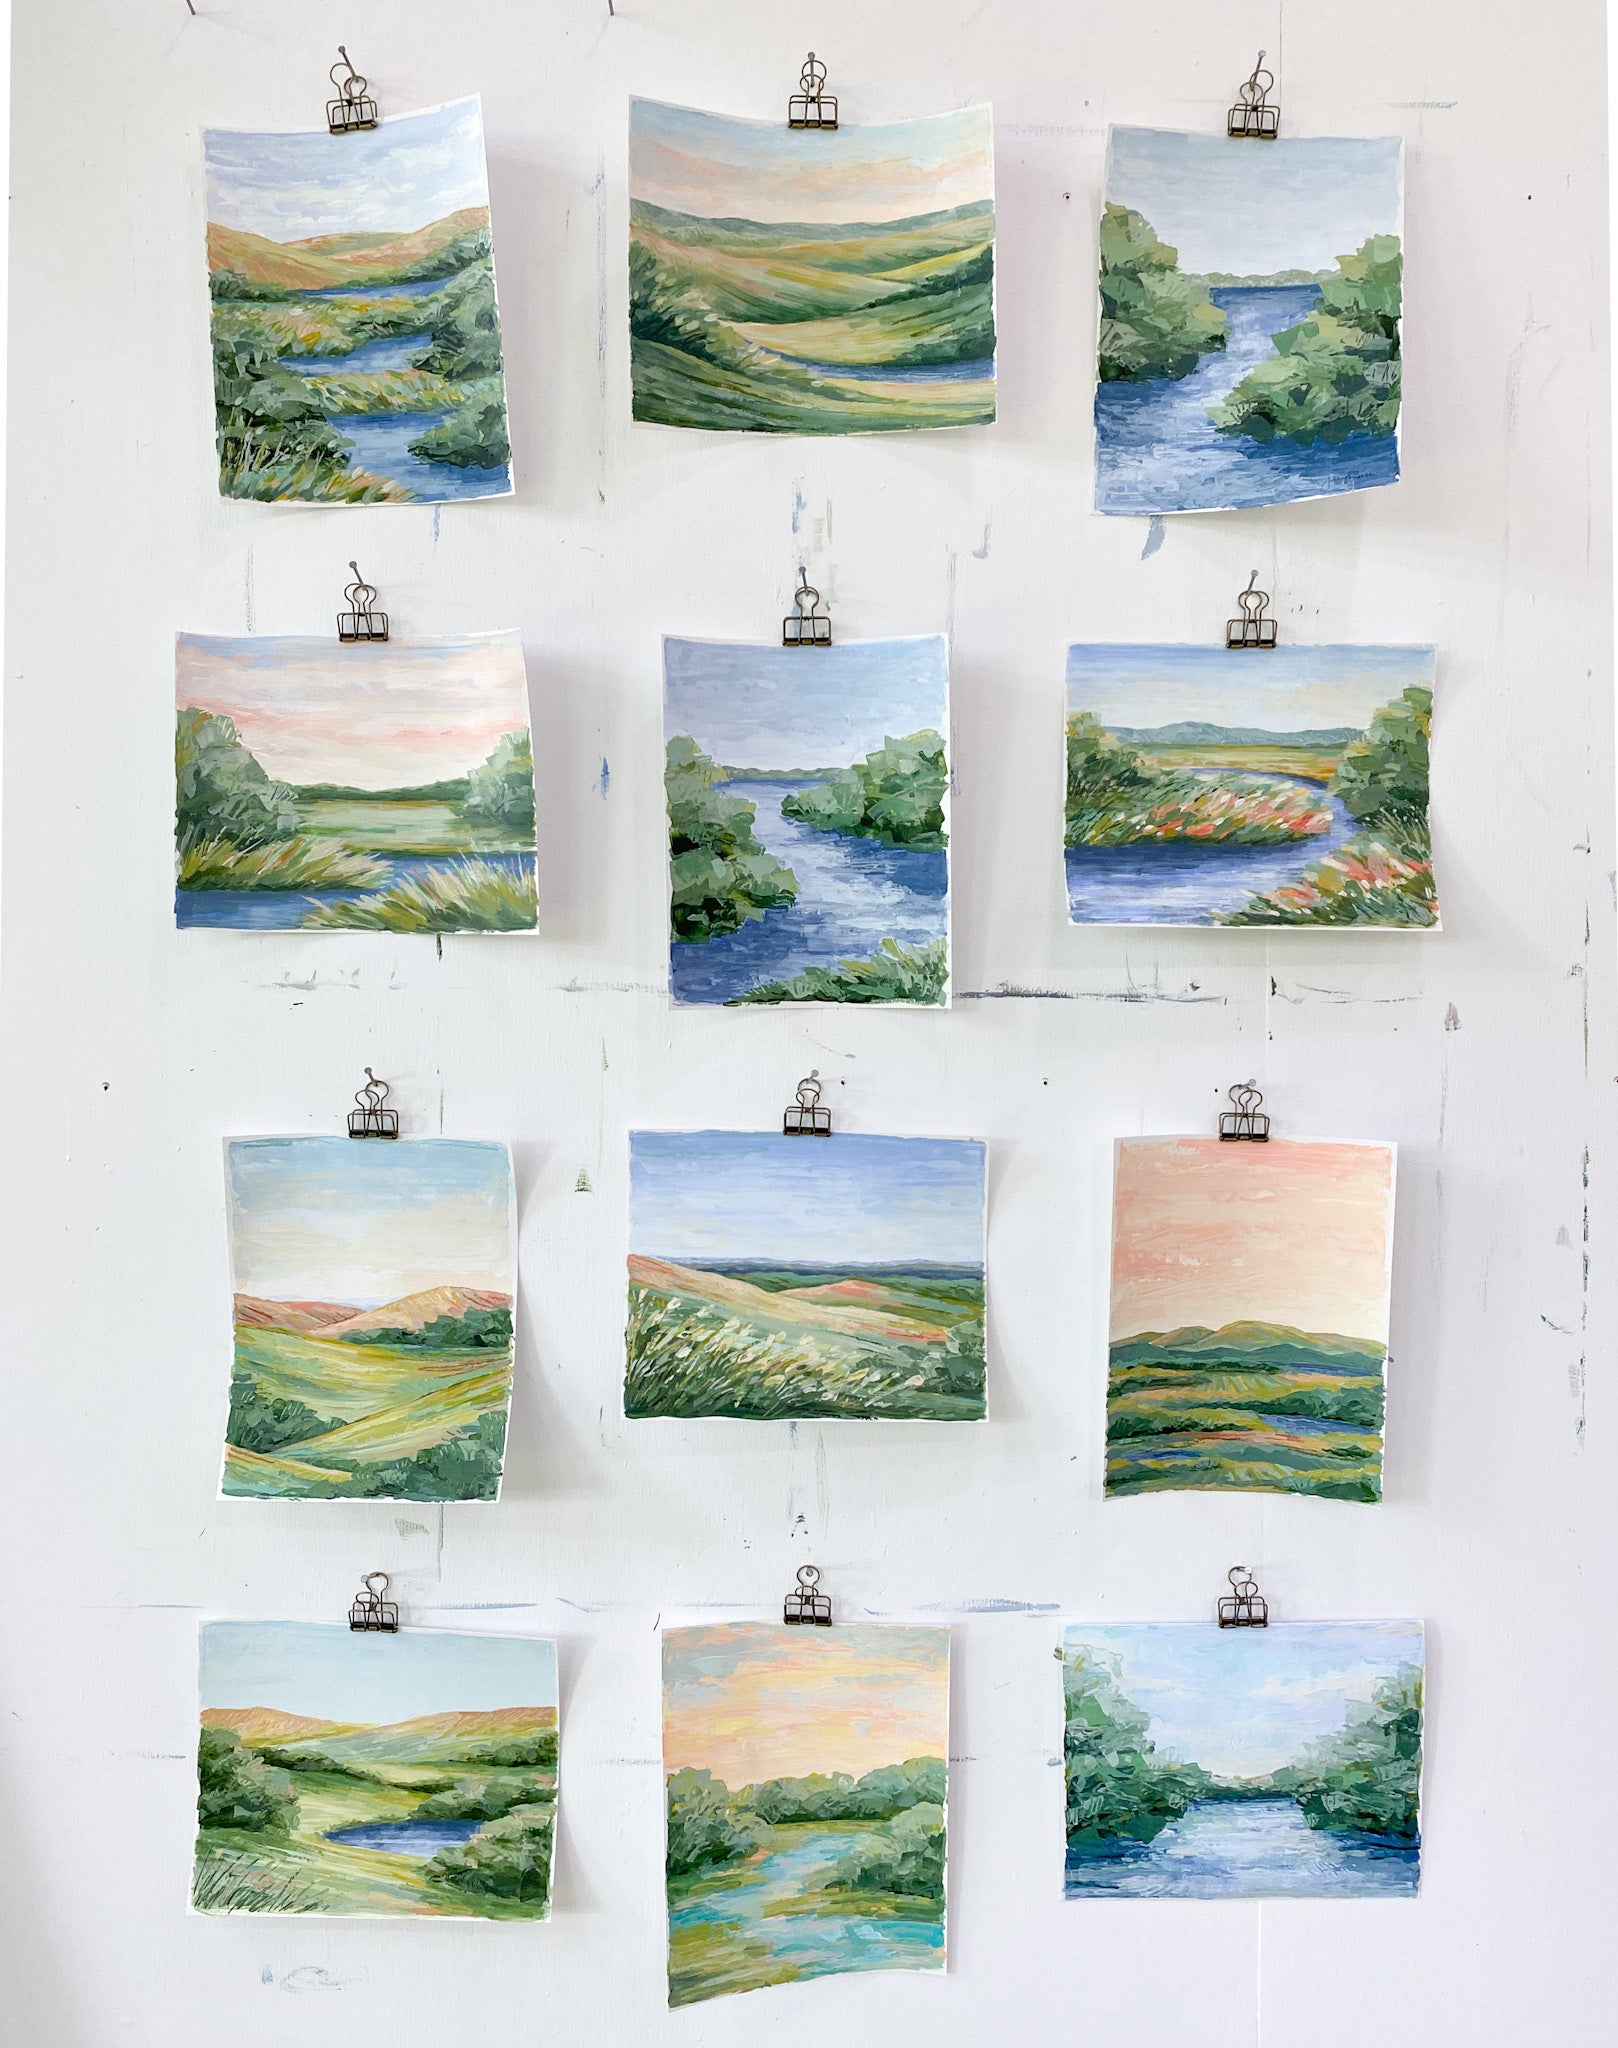 Twelve new 8x10 landscape paintings